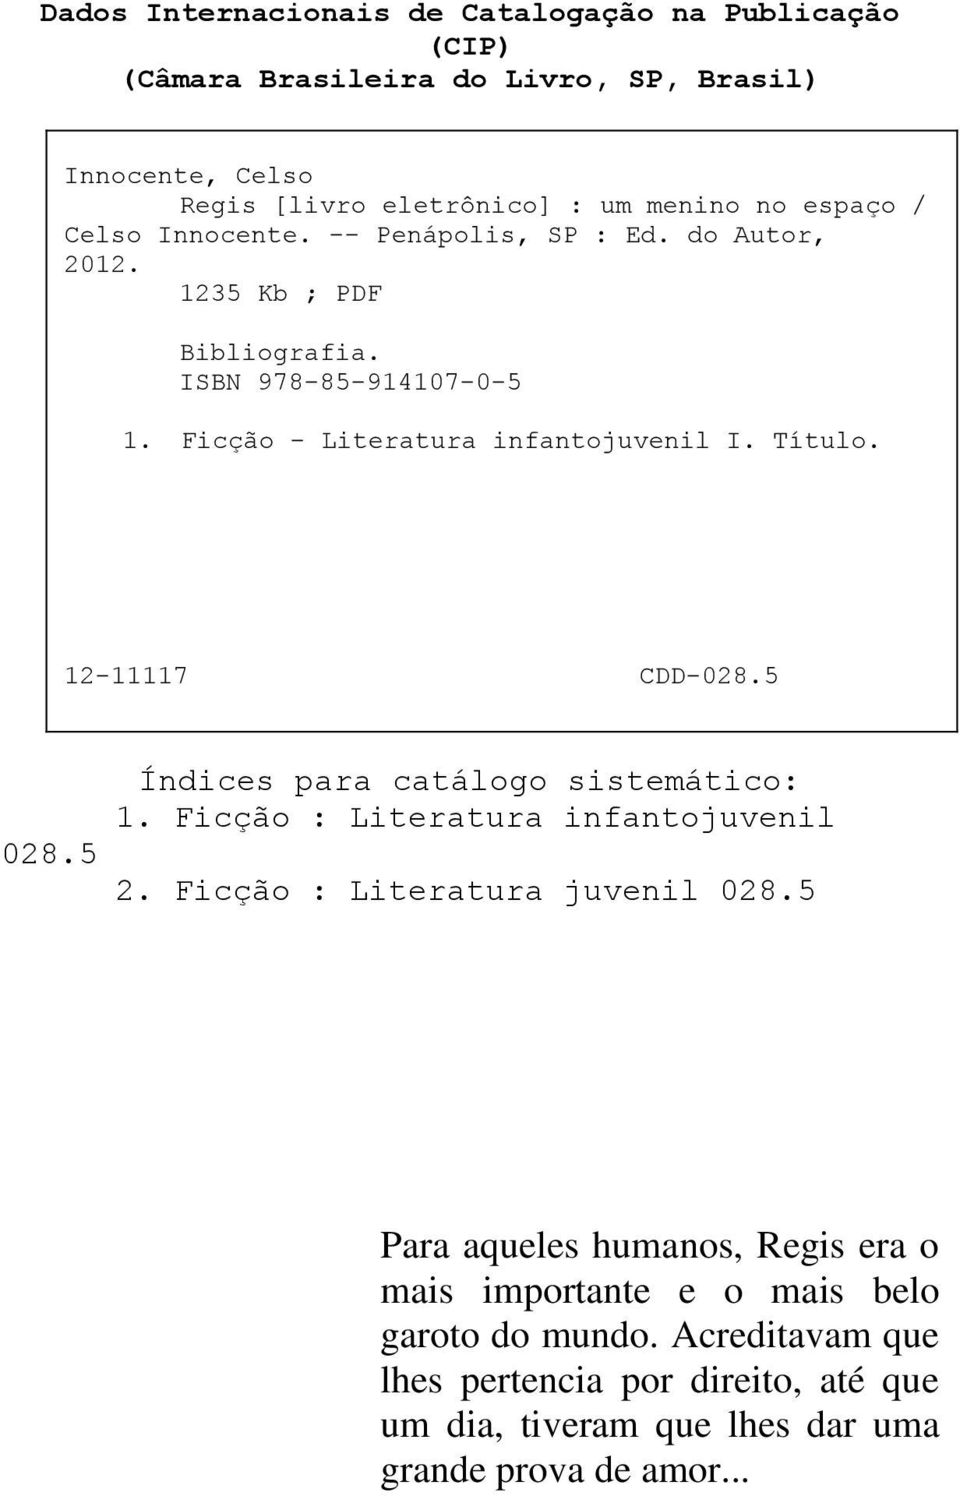 12-11117 CDD-028.5 028.5 Índices para catálogo sistemático: 1. Ficção : Literatura infantojuvenil 2. Ficção : Literatura juvenil 028.